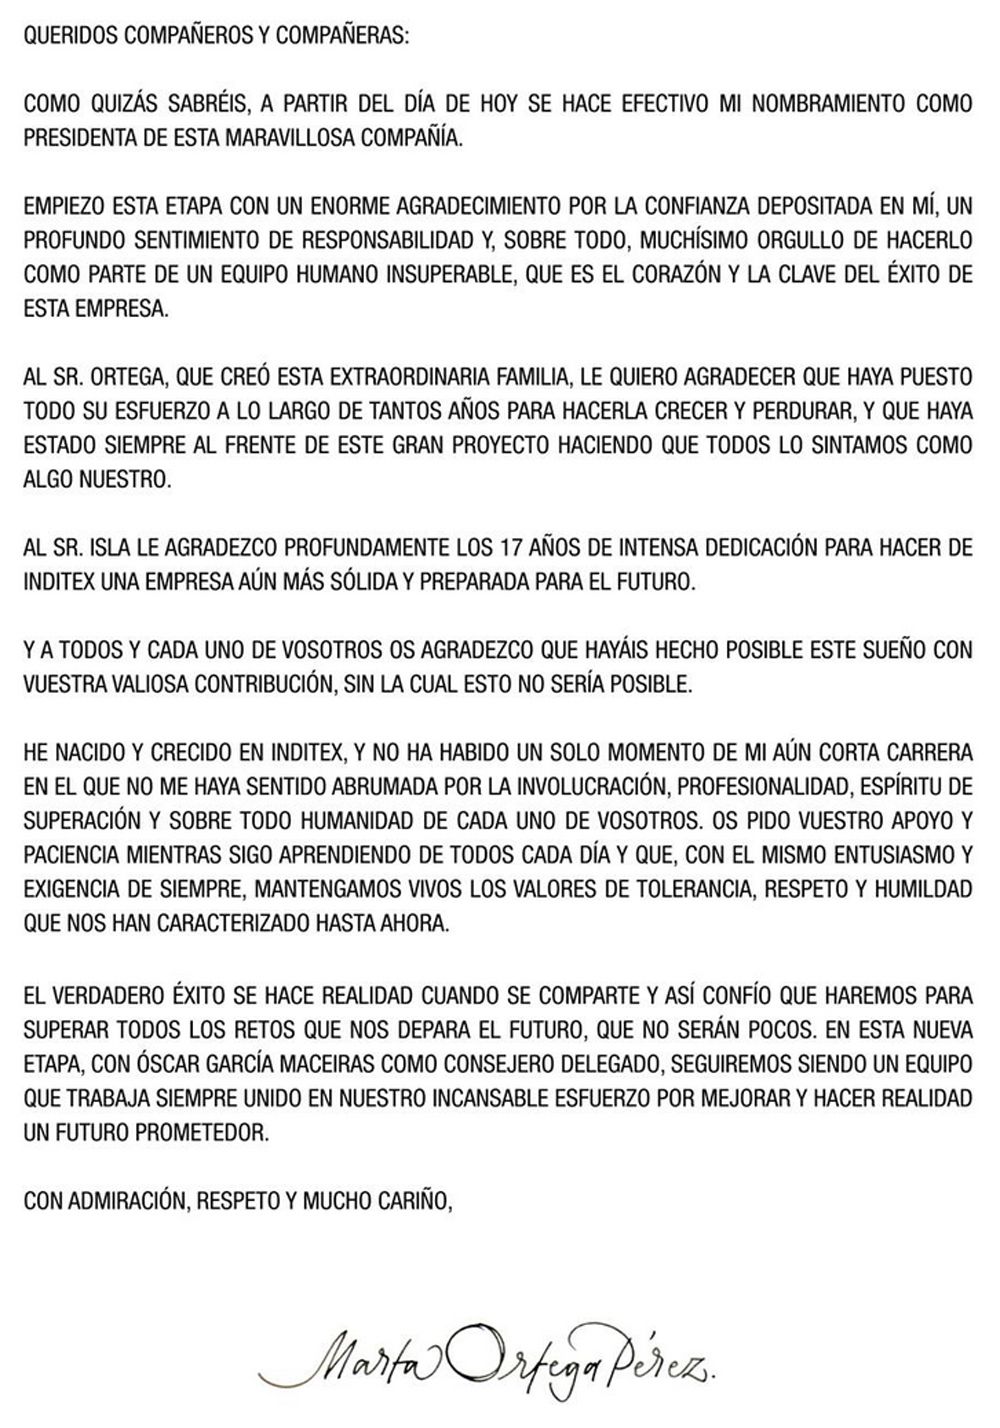 Carta de Marta Ortega a la plantilla de Inditex tras tomar las riendas del grupo como presidenta no ejecutiva.